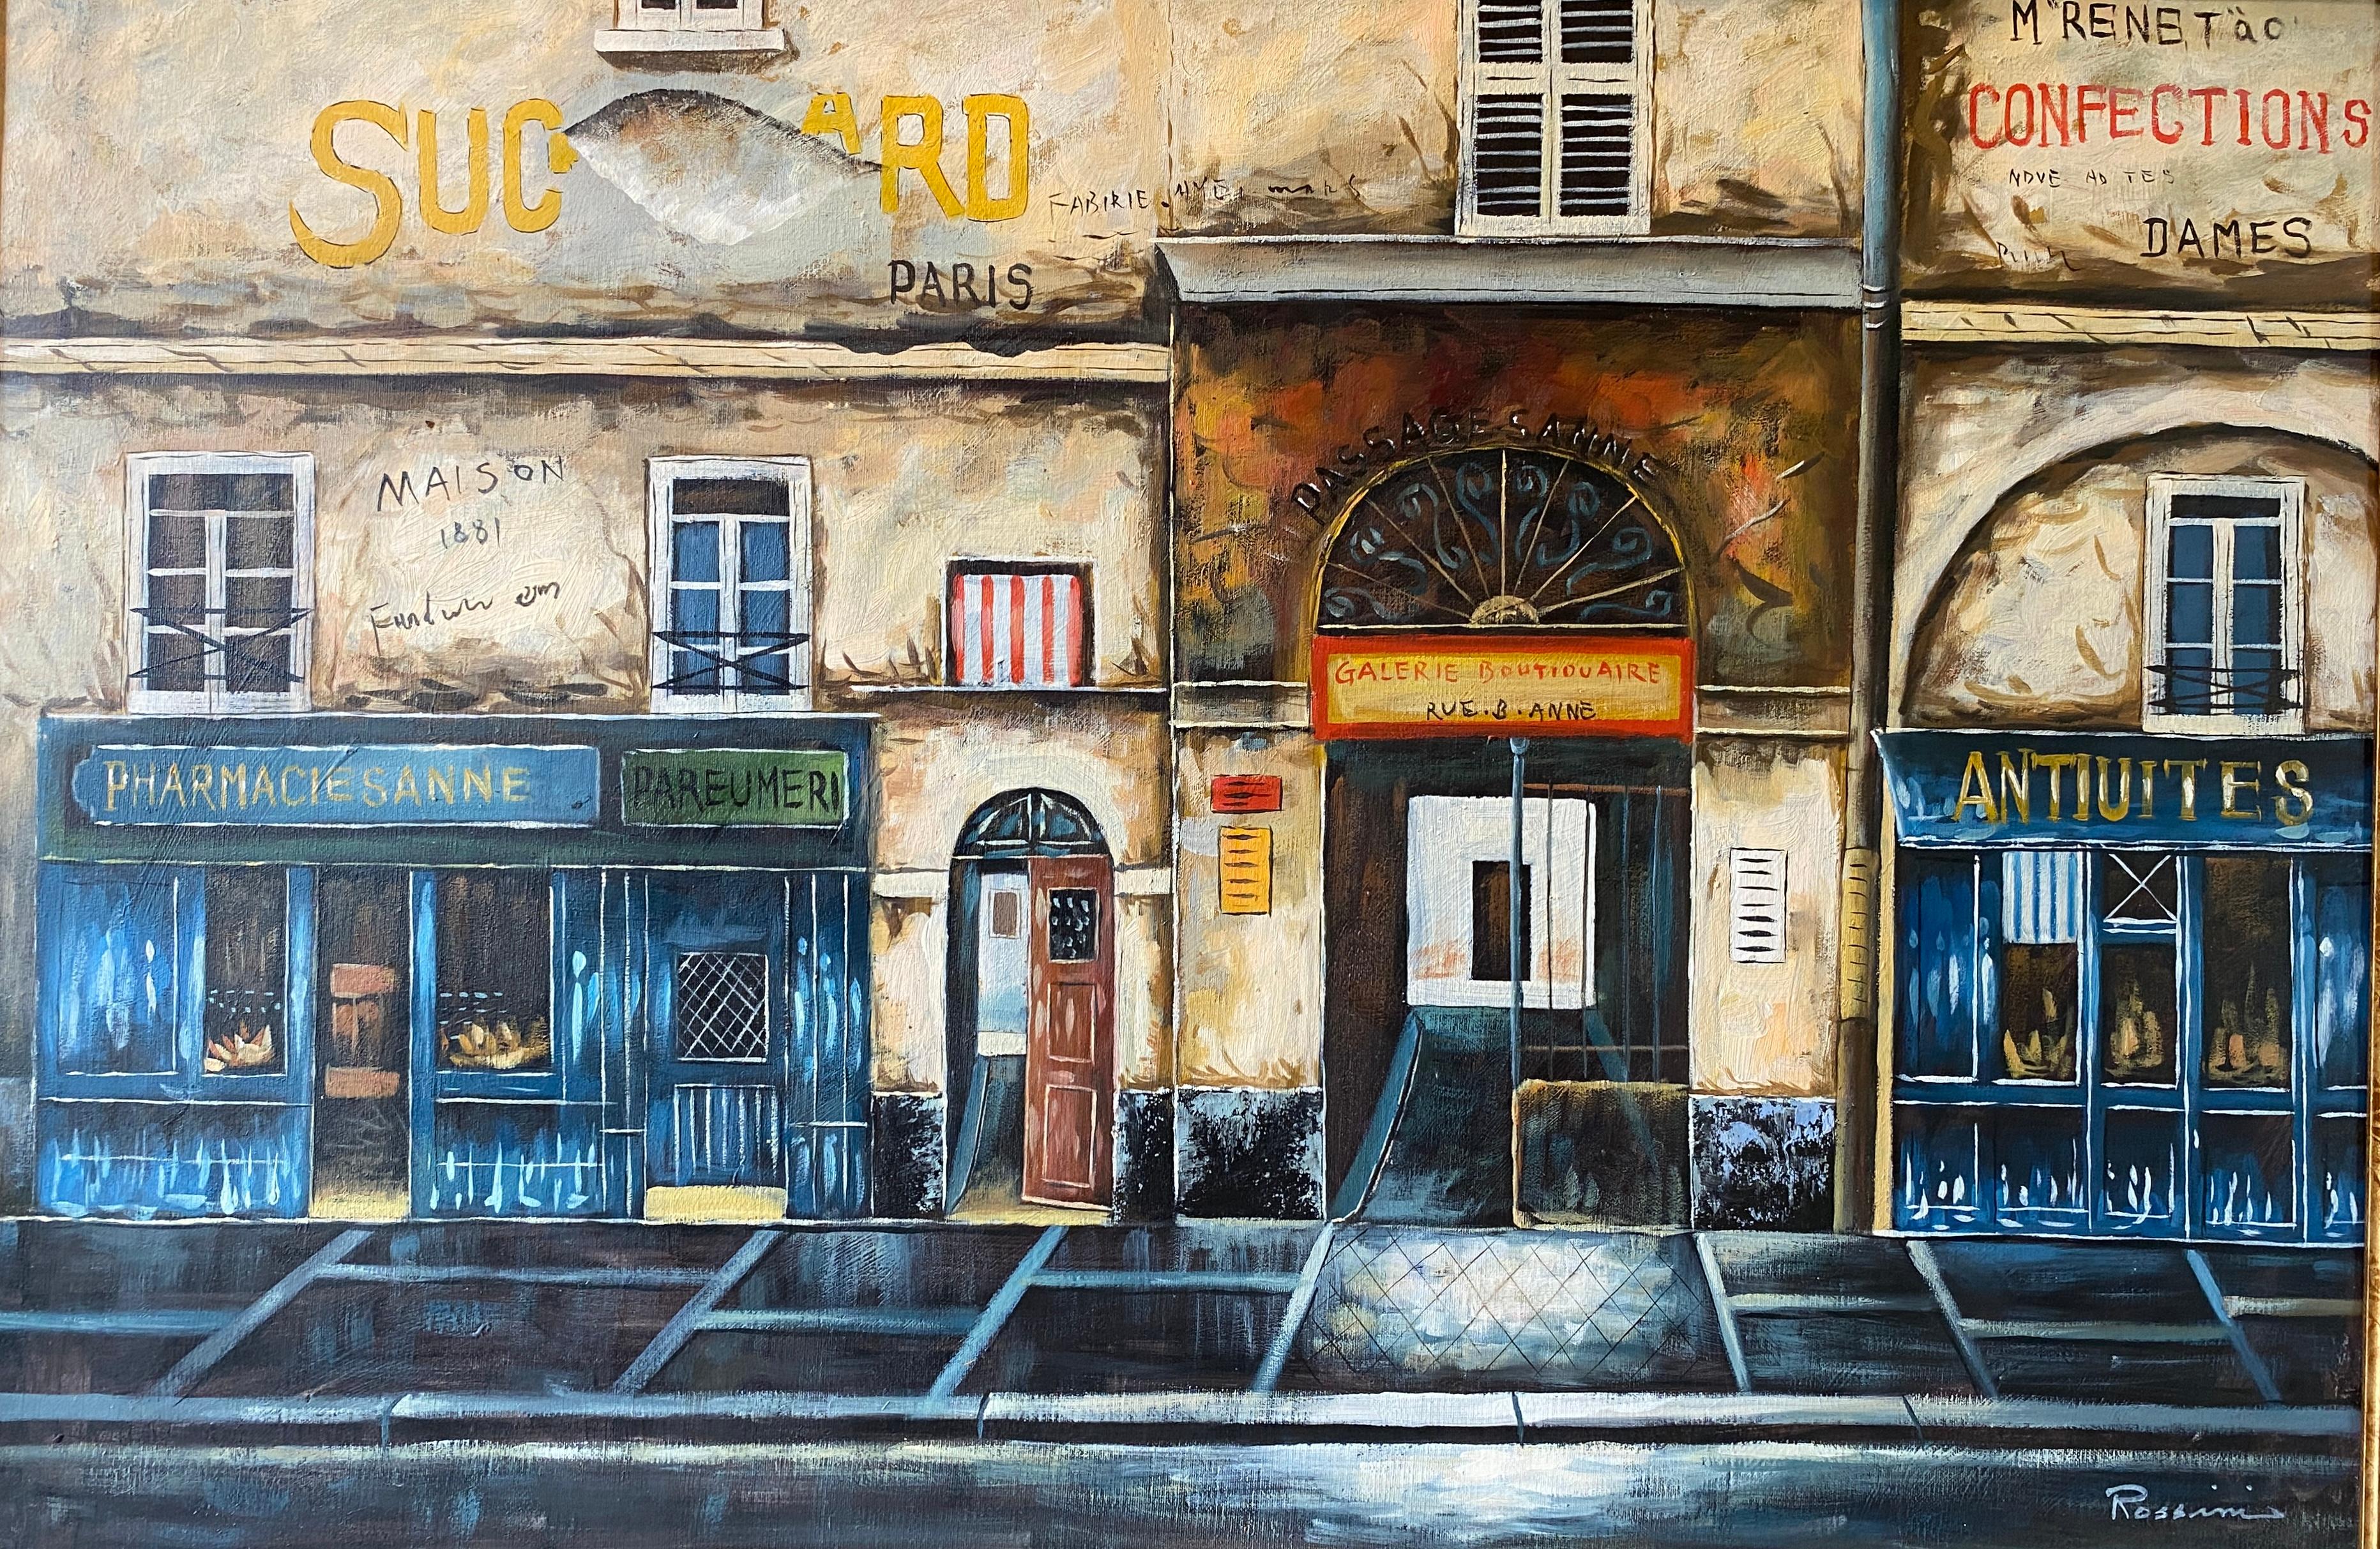 Peinture décorative à l'huile sur toile représentant une rue française et ses devantures. 
Les teintes bleues, jaunes, ocres et brunes sont très agréables à l'œil. 

Cette peinture à l'huile sur toile bien exécutée représentant une rue française